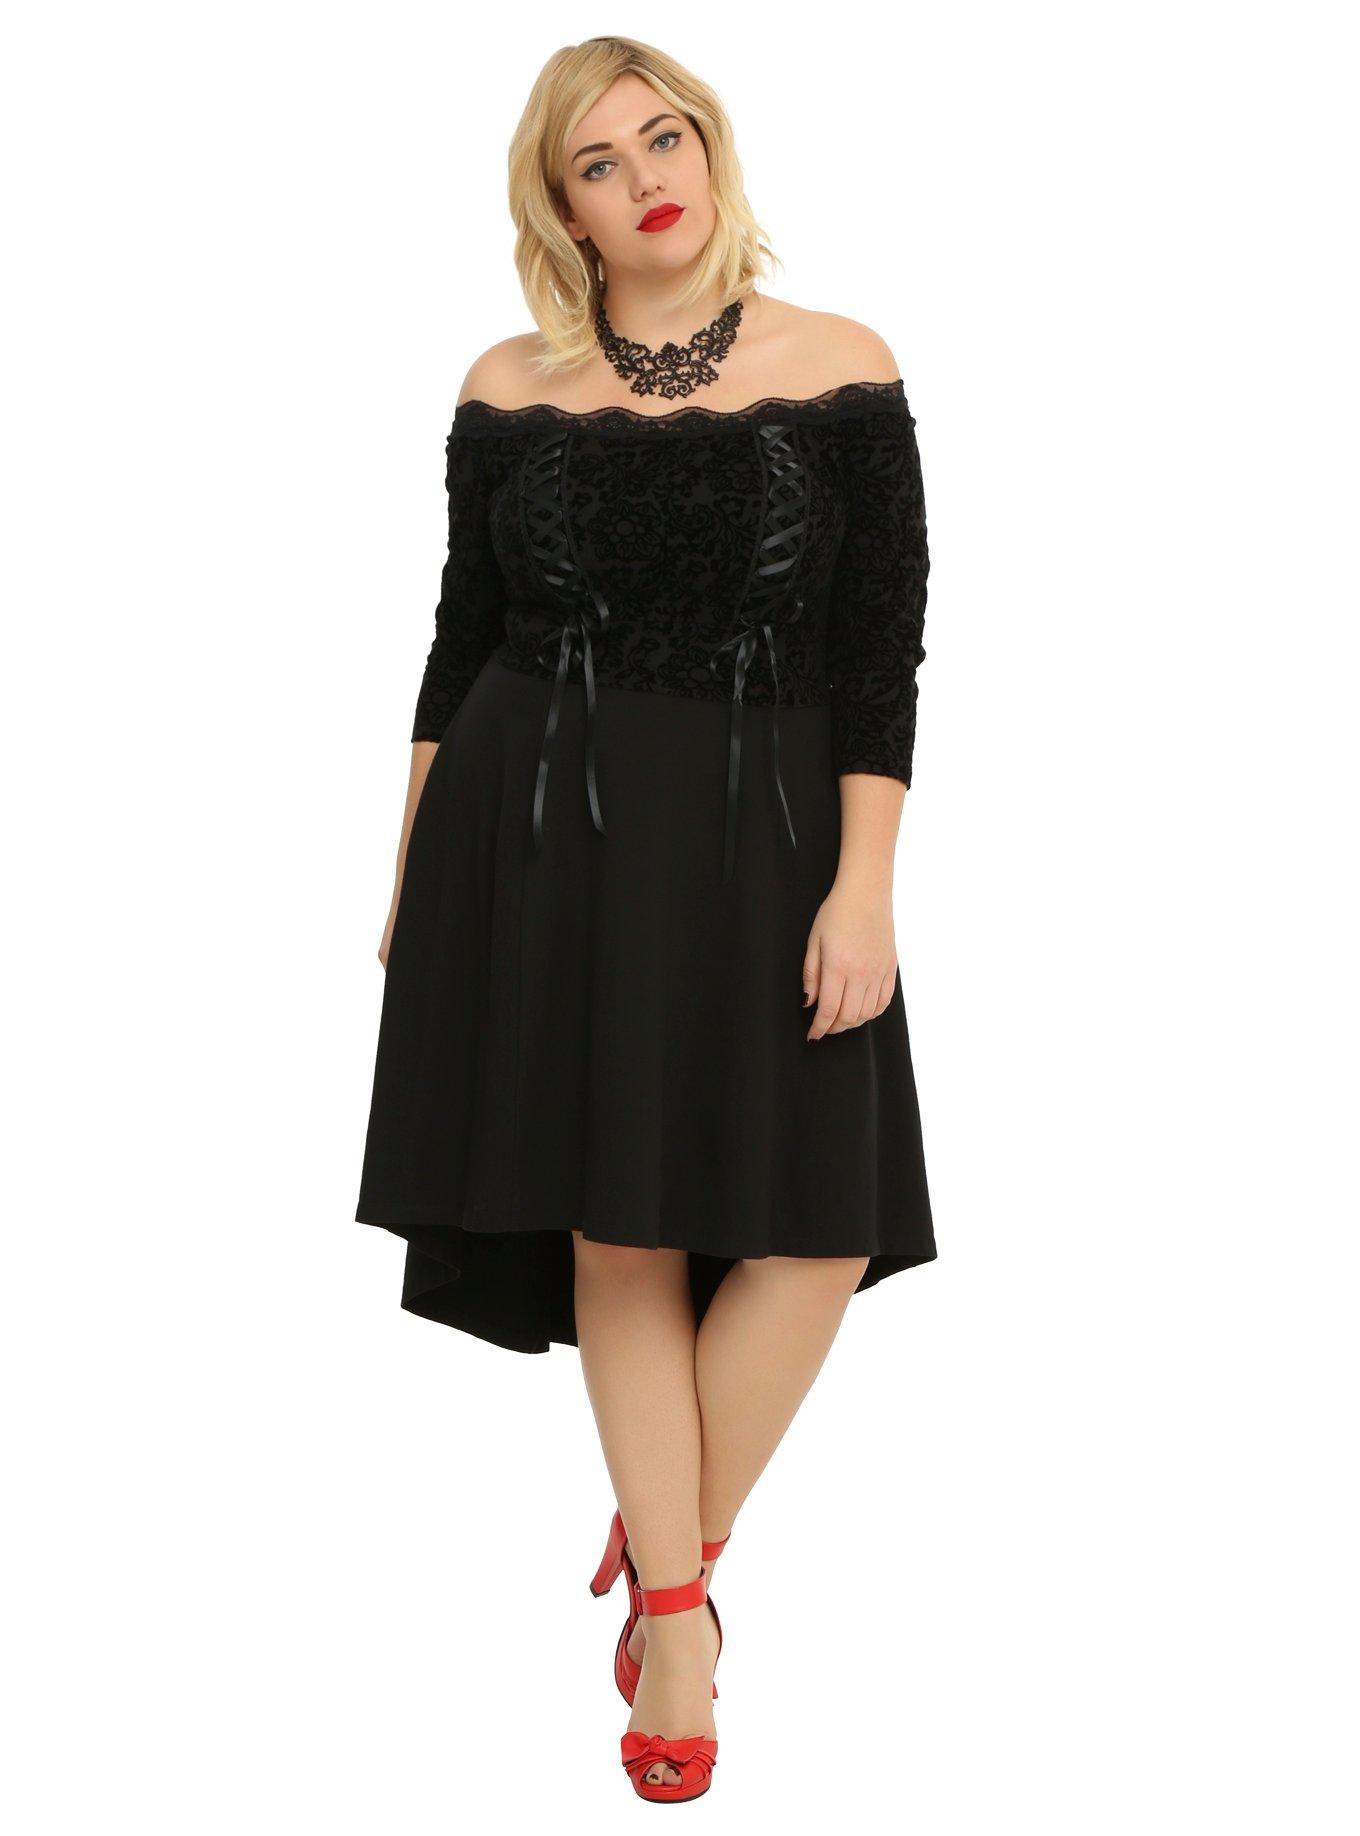 Tripp Black Lace-Up Hi-Low Dress Plus Size, BLACK, hi-res